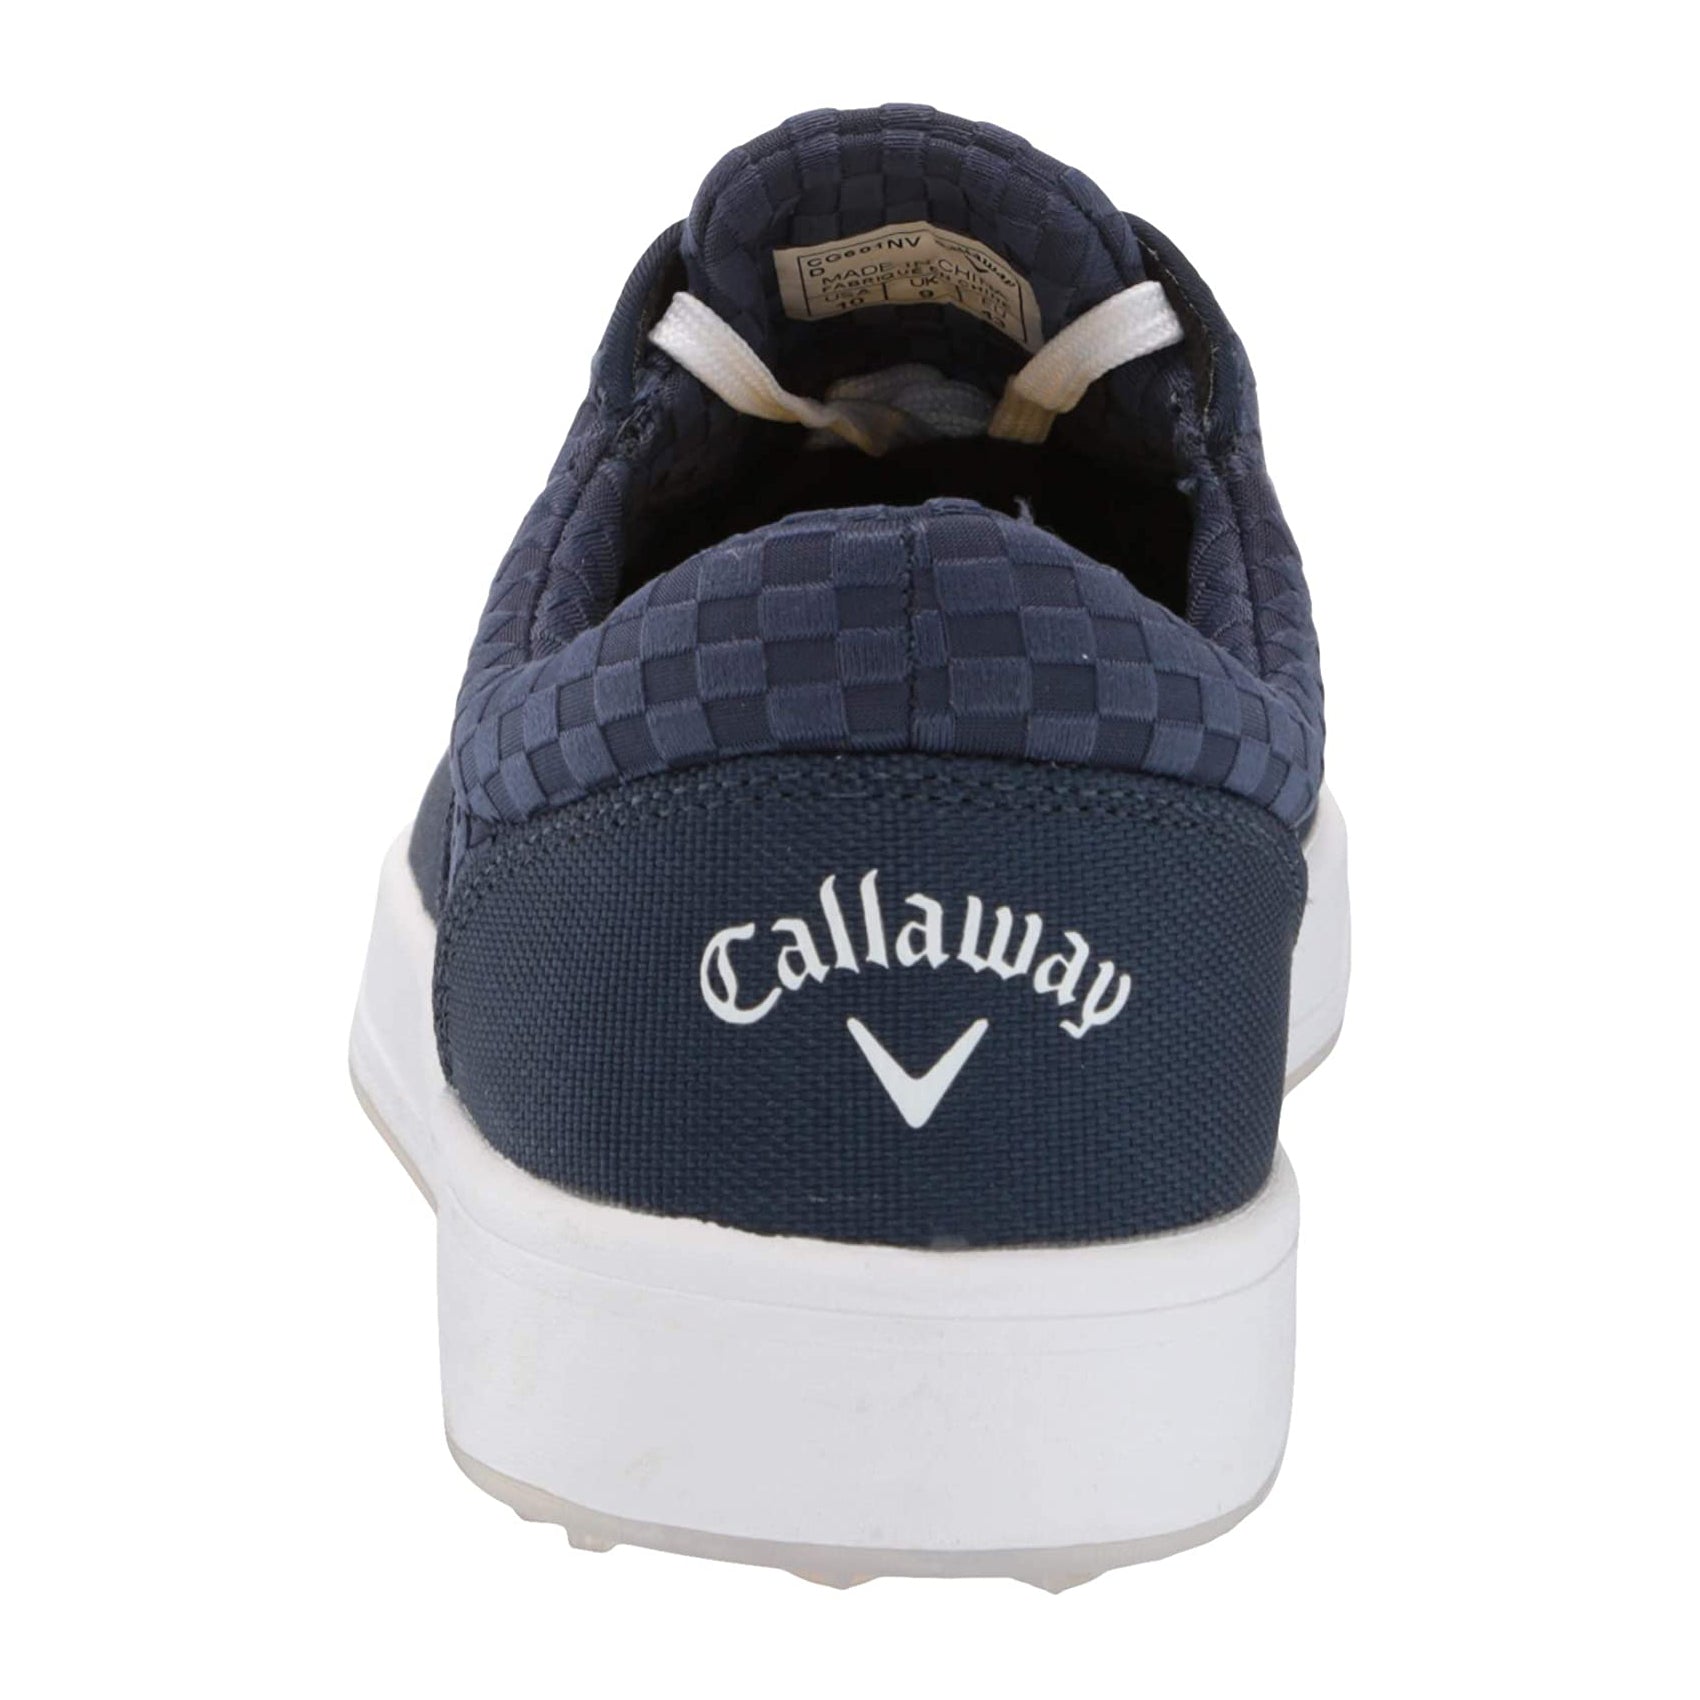 Callaway Del Mar Sunset Spikeless Golf Shoes 2021